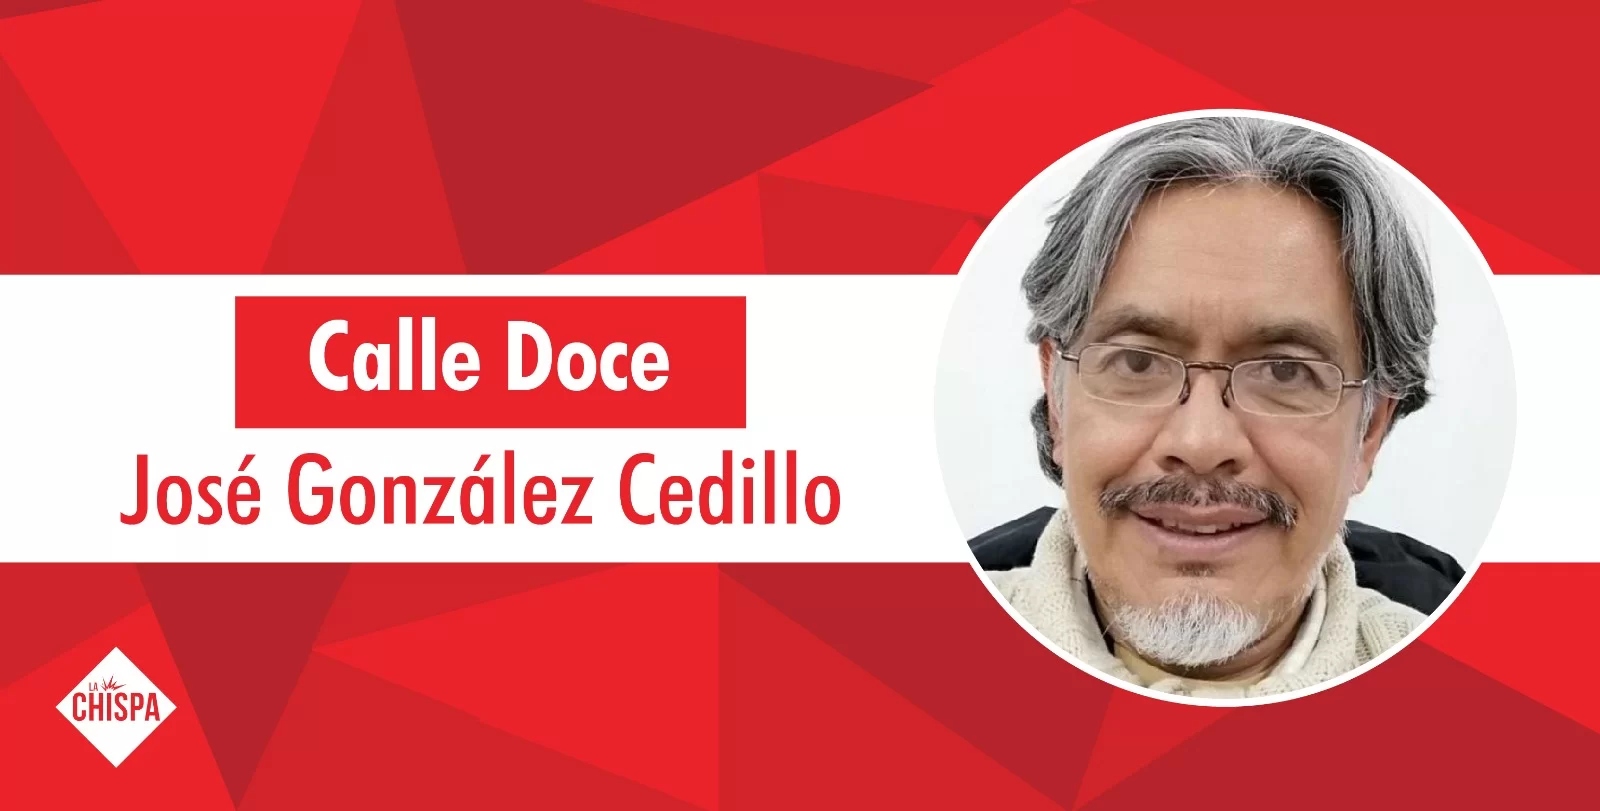 José González Cedillo